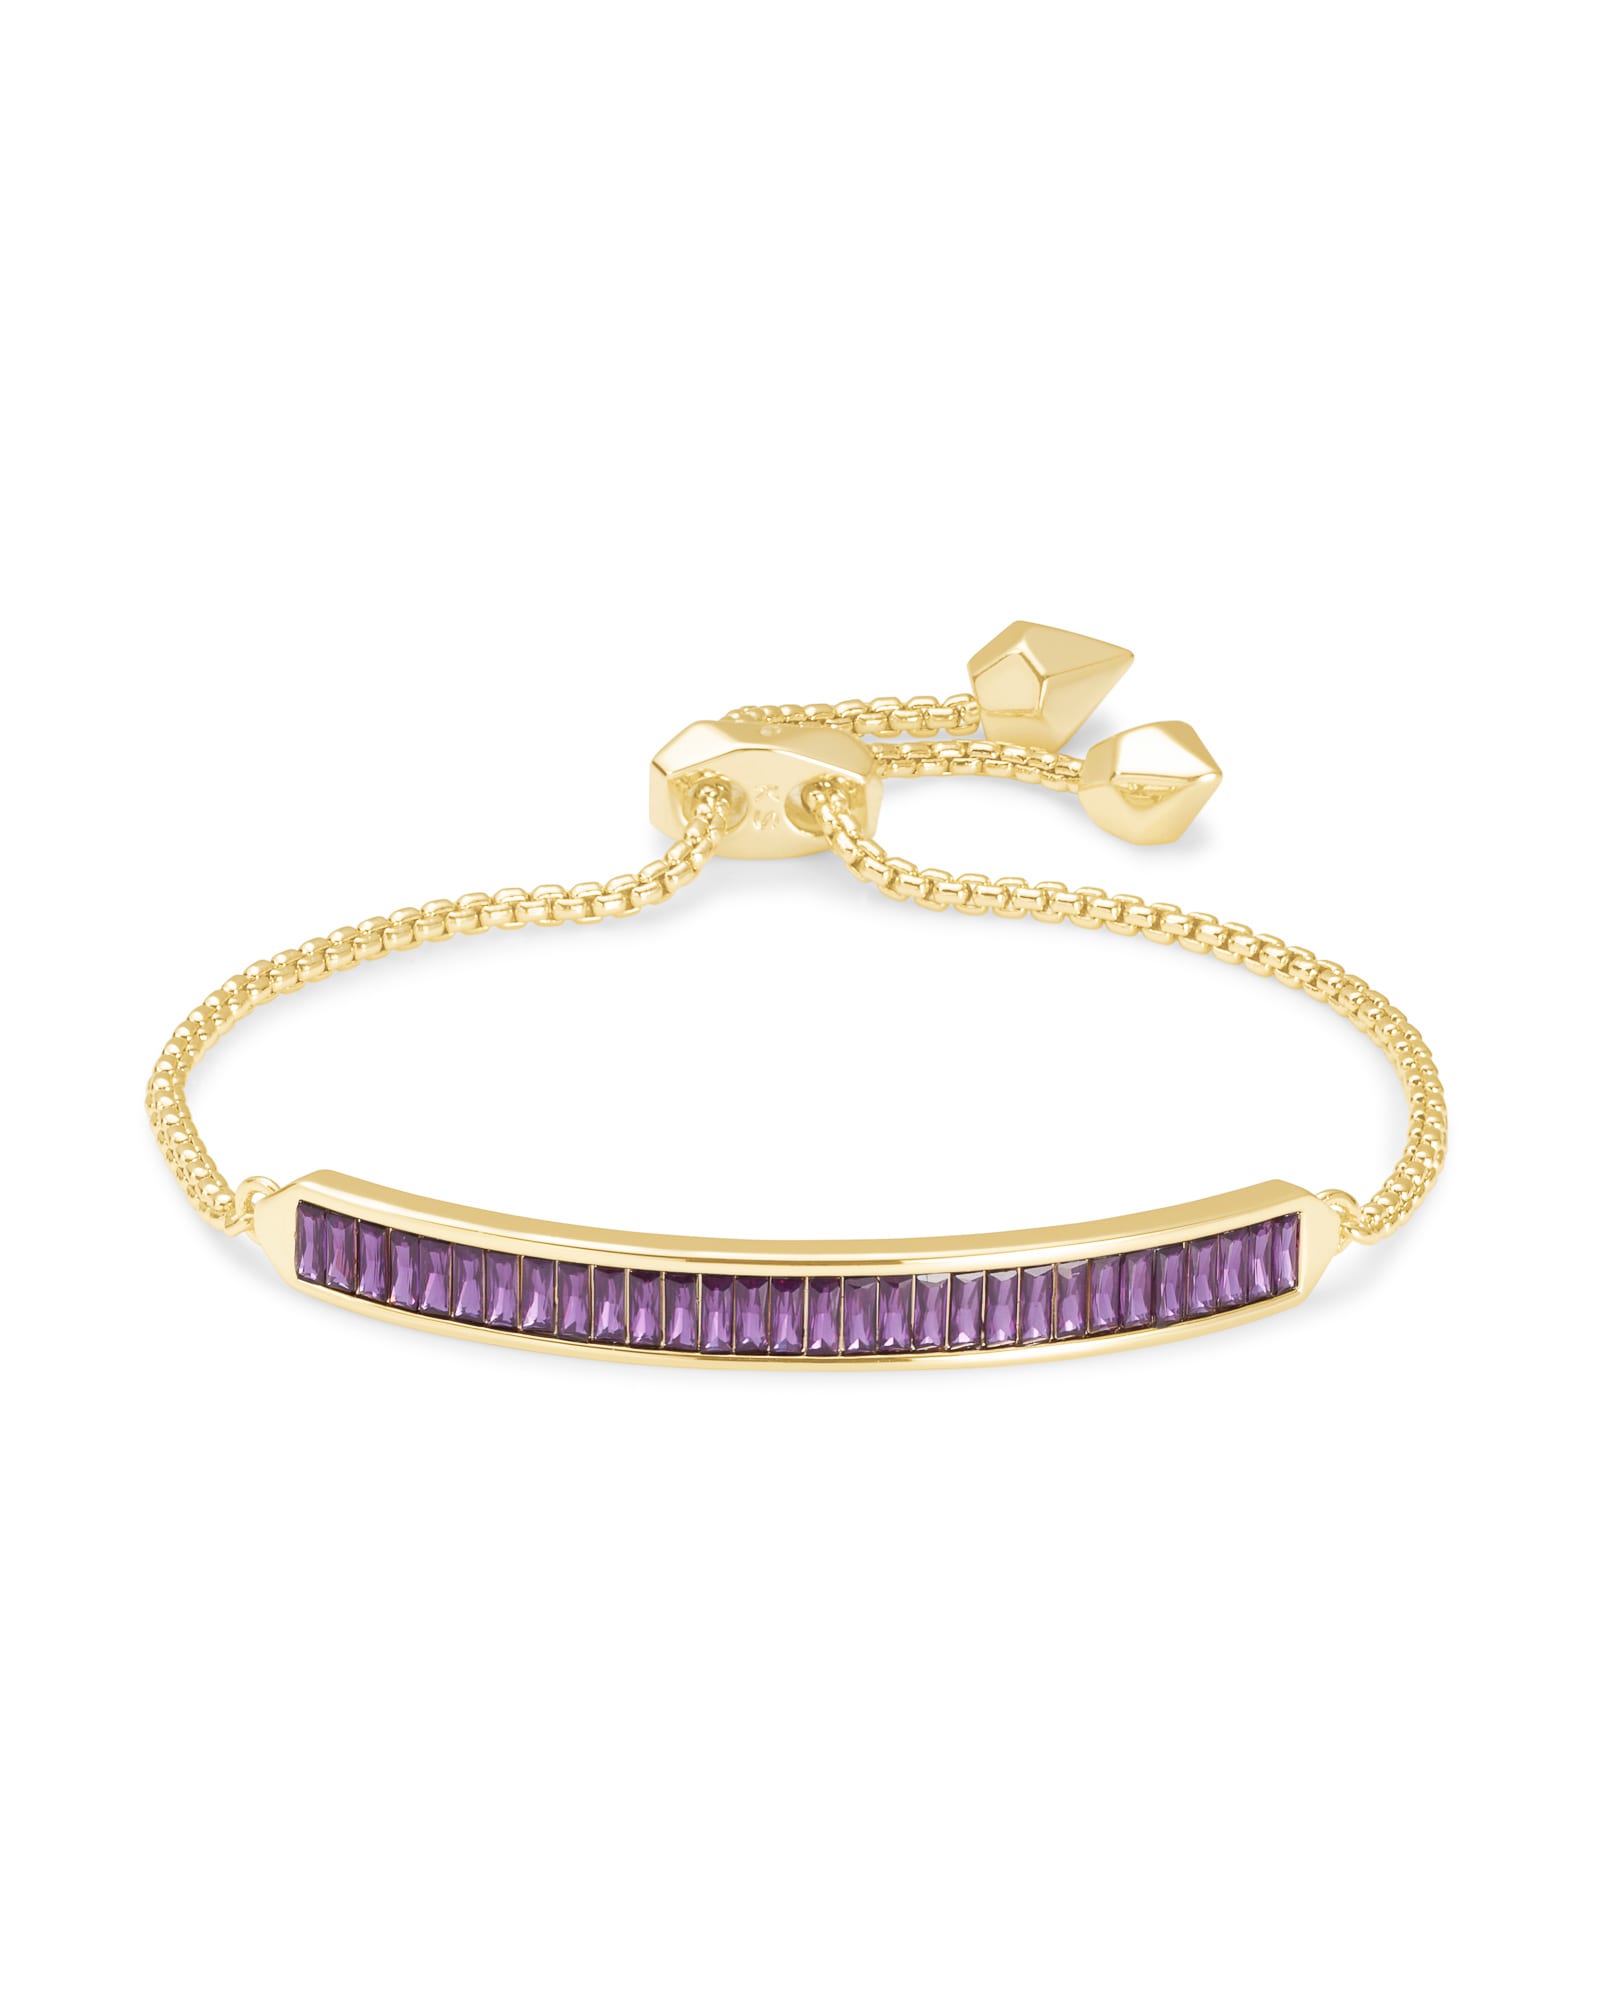 Jack Adjustable Gold Chain Bracelet in Purple Crystal image number 0.0